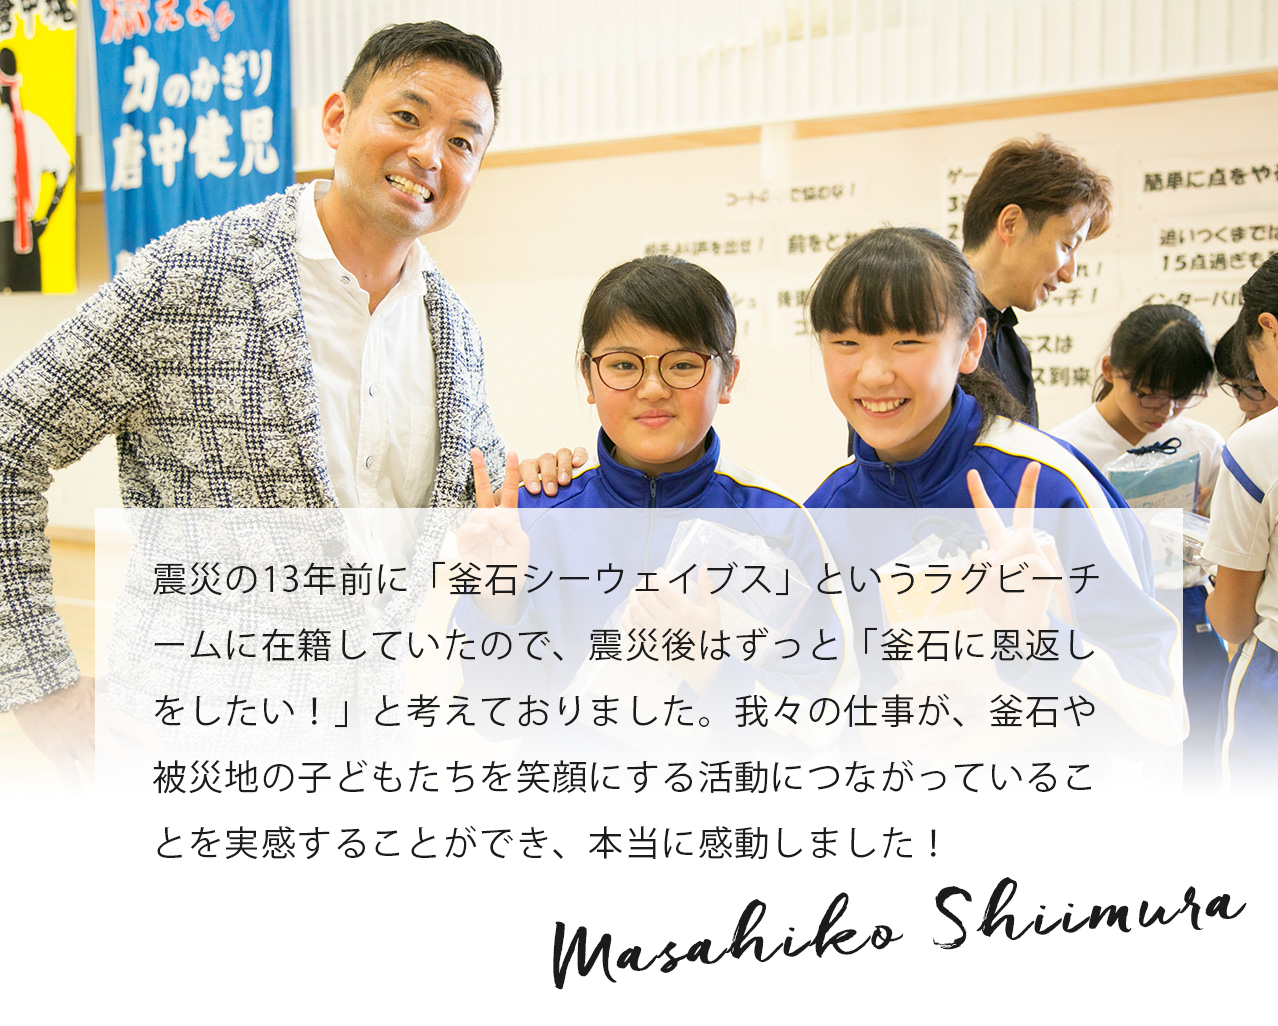 震災の13年前に「釜石シーウェイブス」というラグビーチームに在籍していたので、震災後はずっと「釜石に恩返しをしたい！」と考えておりました。我々の仕事が、釜石や被災地の子どもたちを笑顔にする活動につながっていることを実感することができ、本当に感動しました！ Masahiko Shiimura